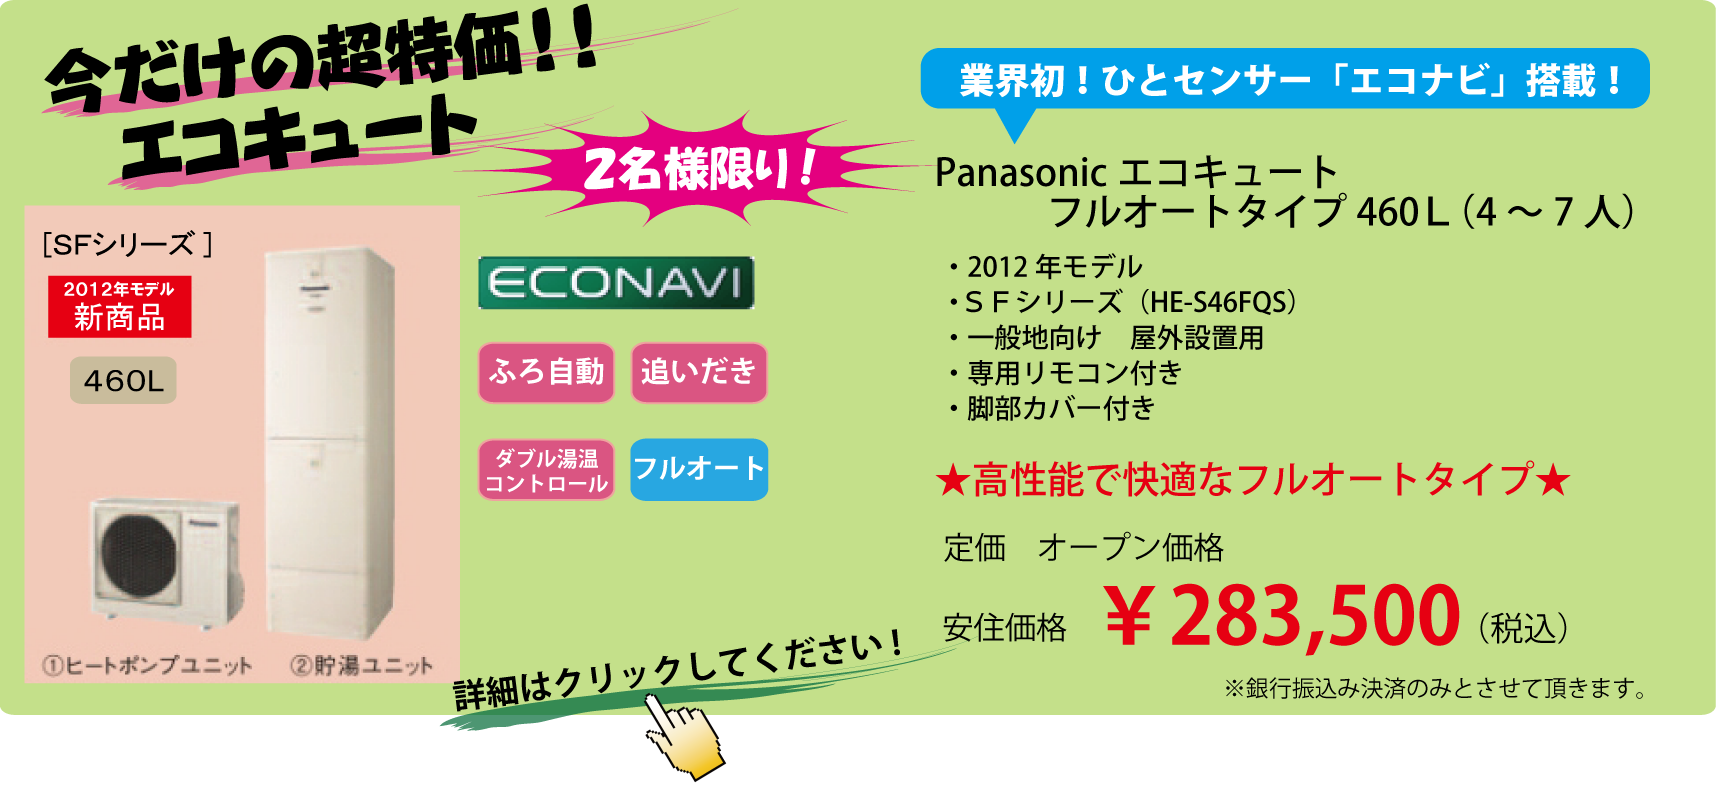 エコキュート★Panasonic製460L★3月末までの大決算セール!!